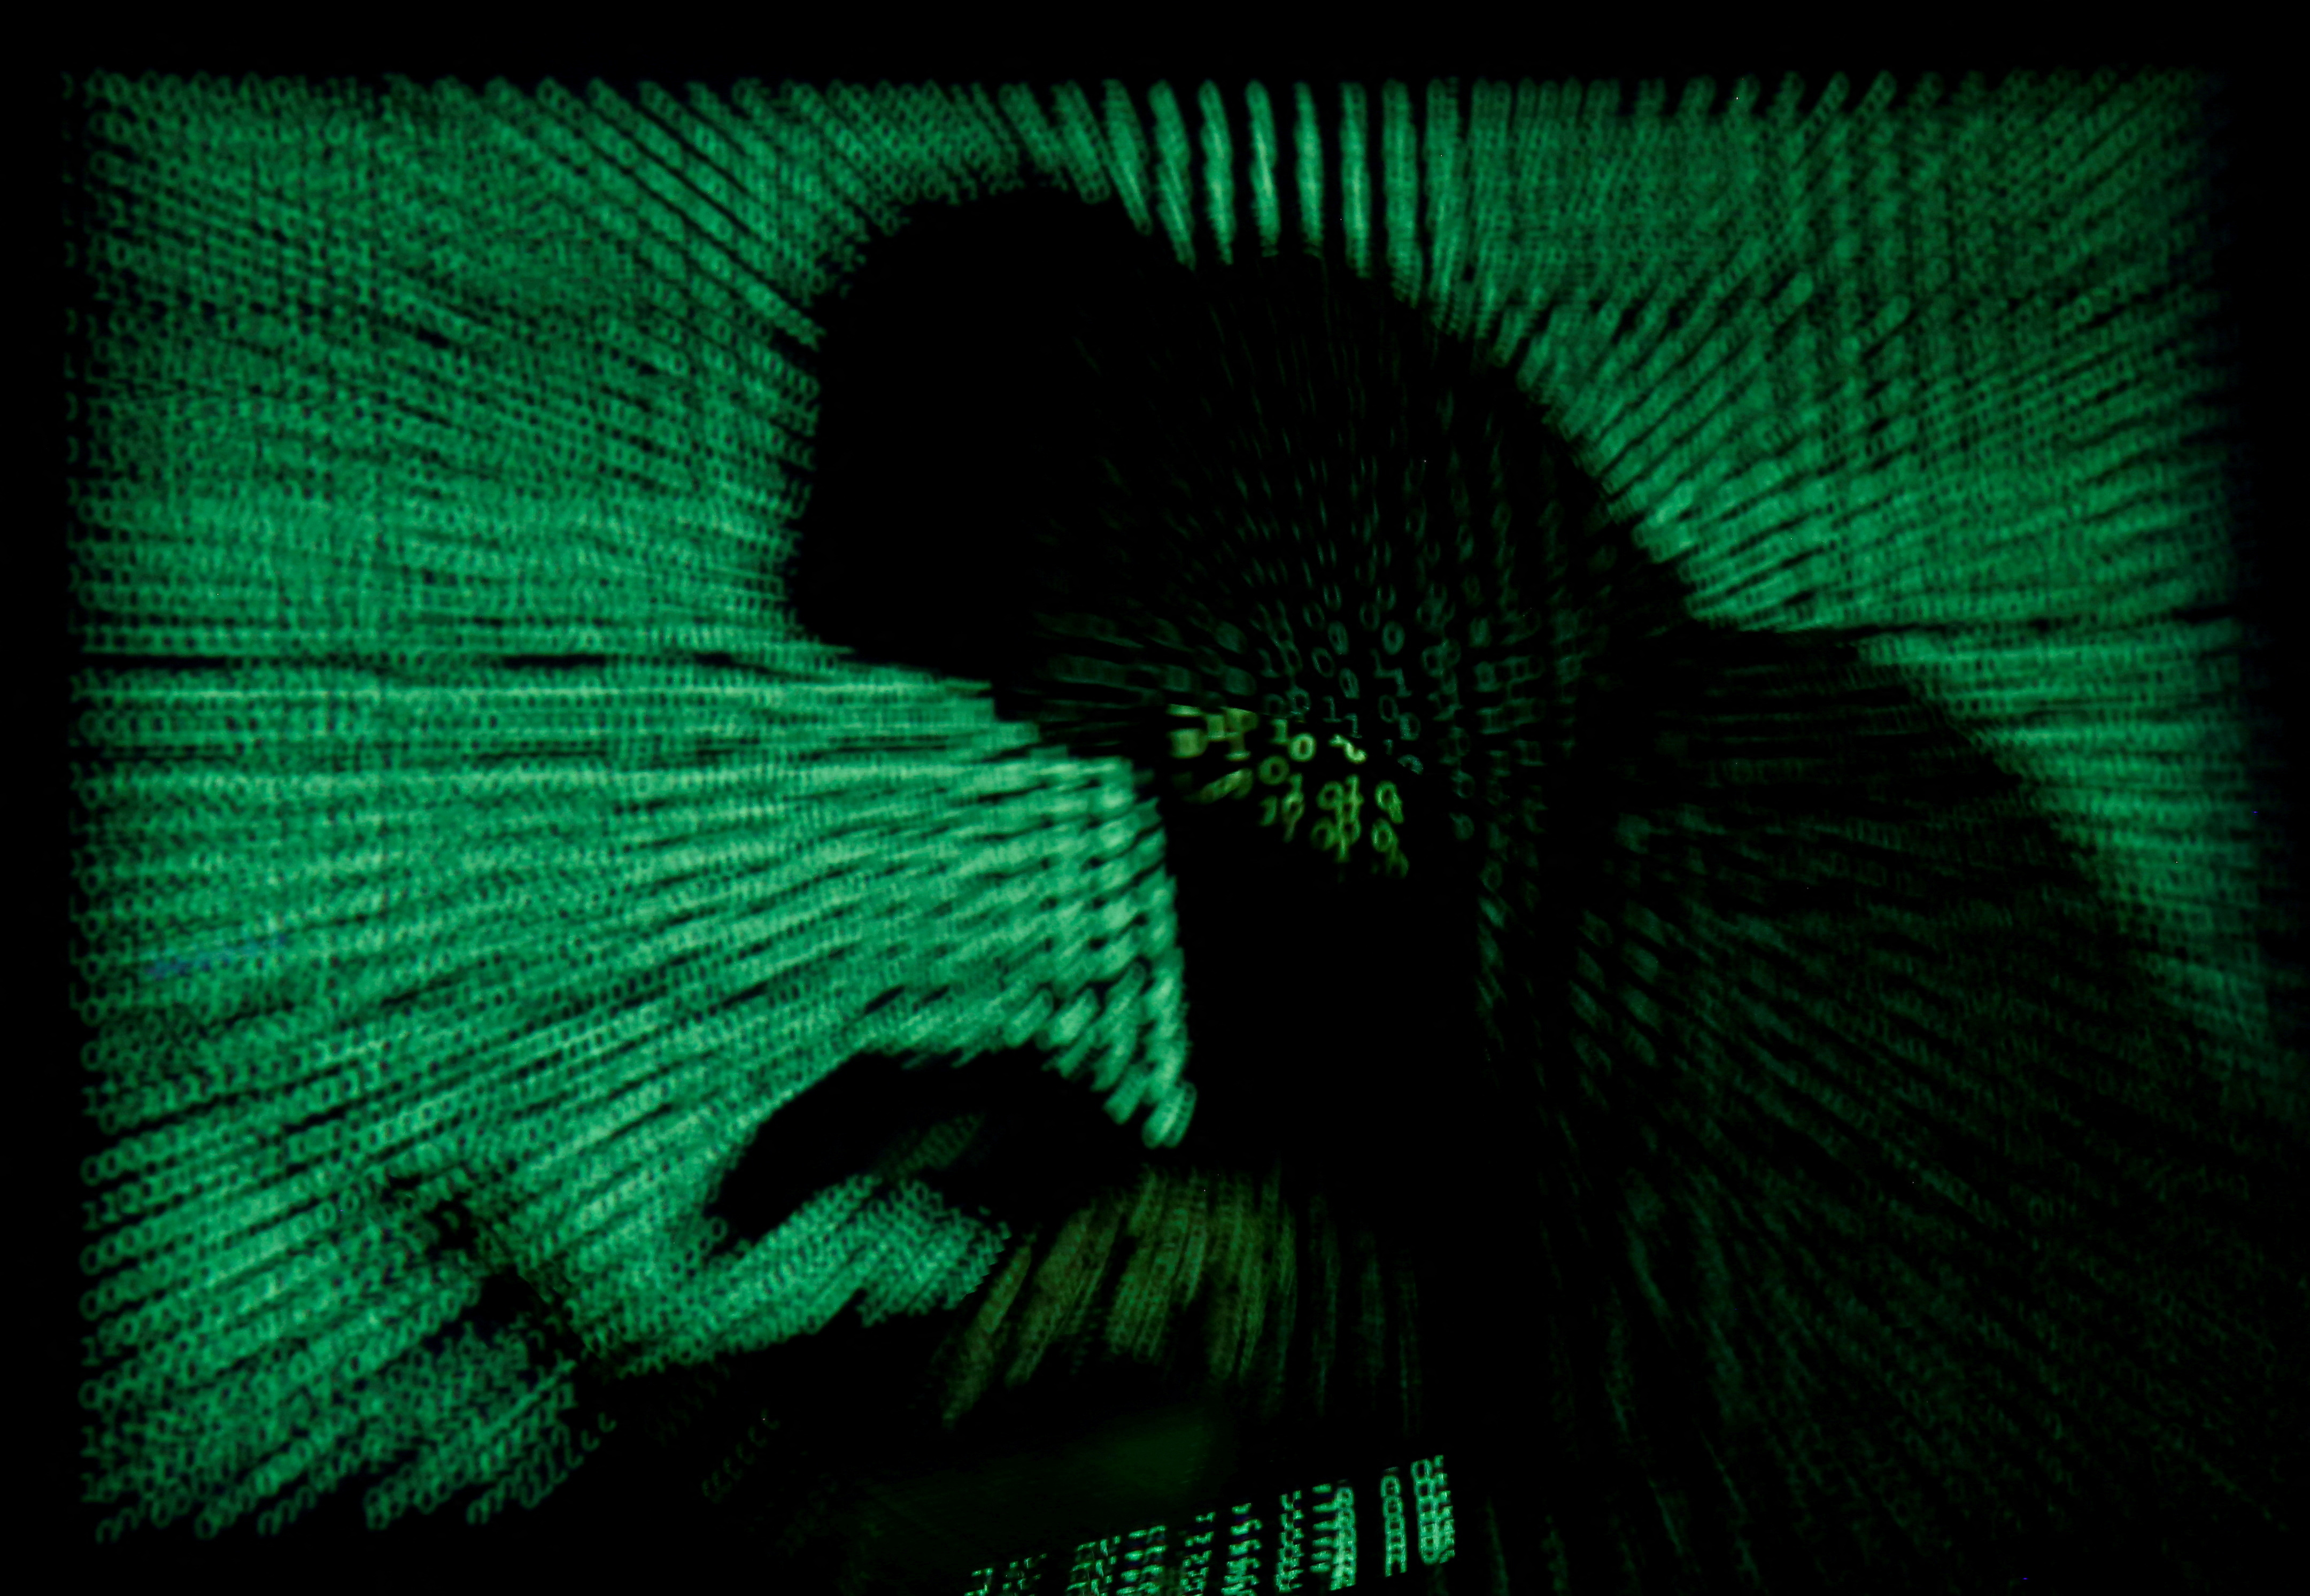 Piratage informatique : à Taïwan, un nouveau vol de données sensibles